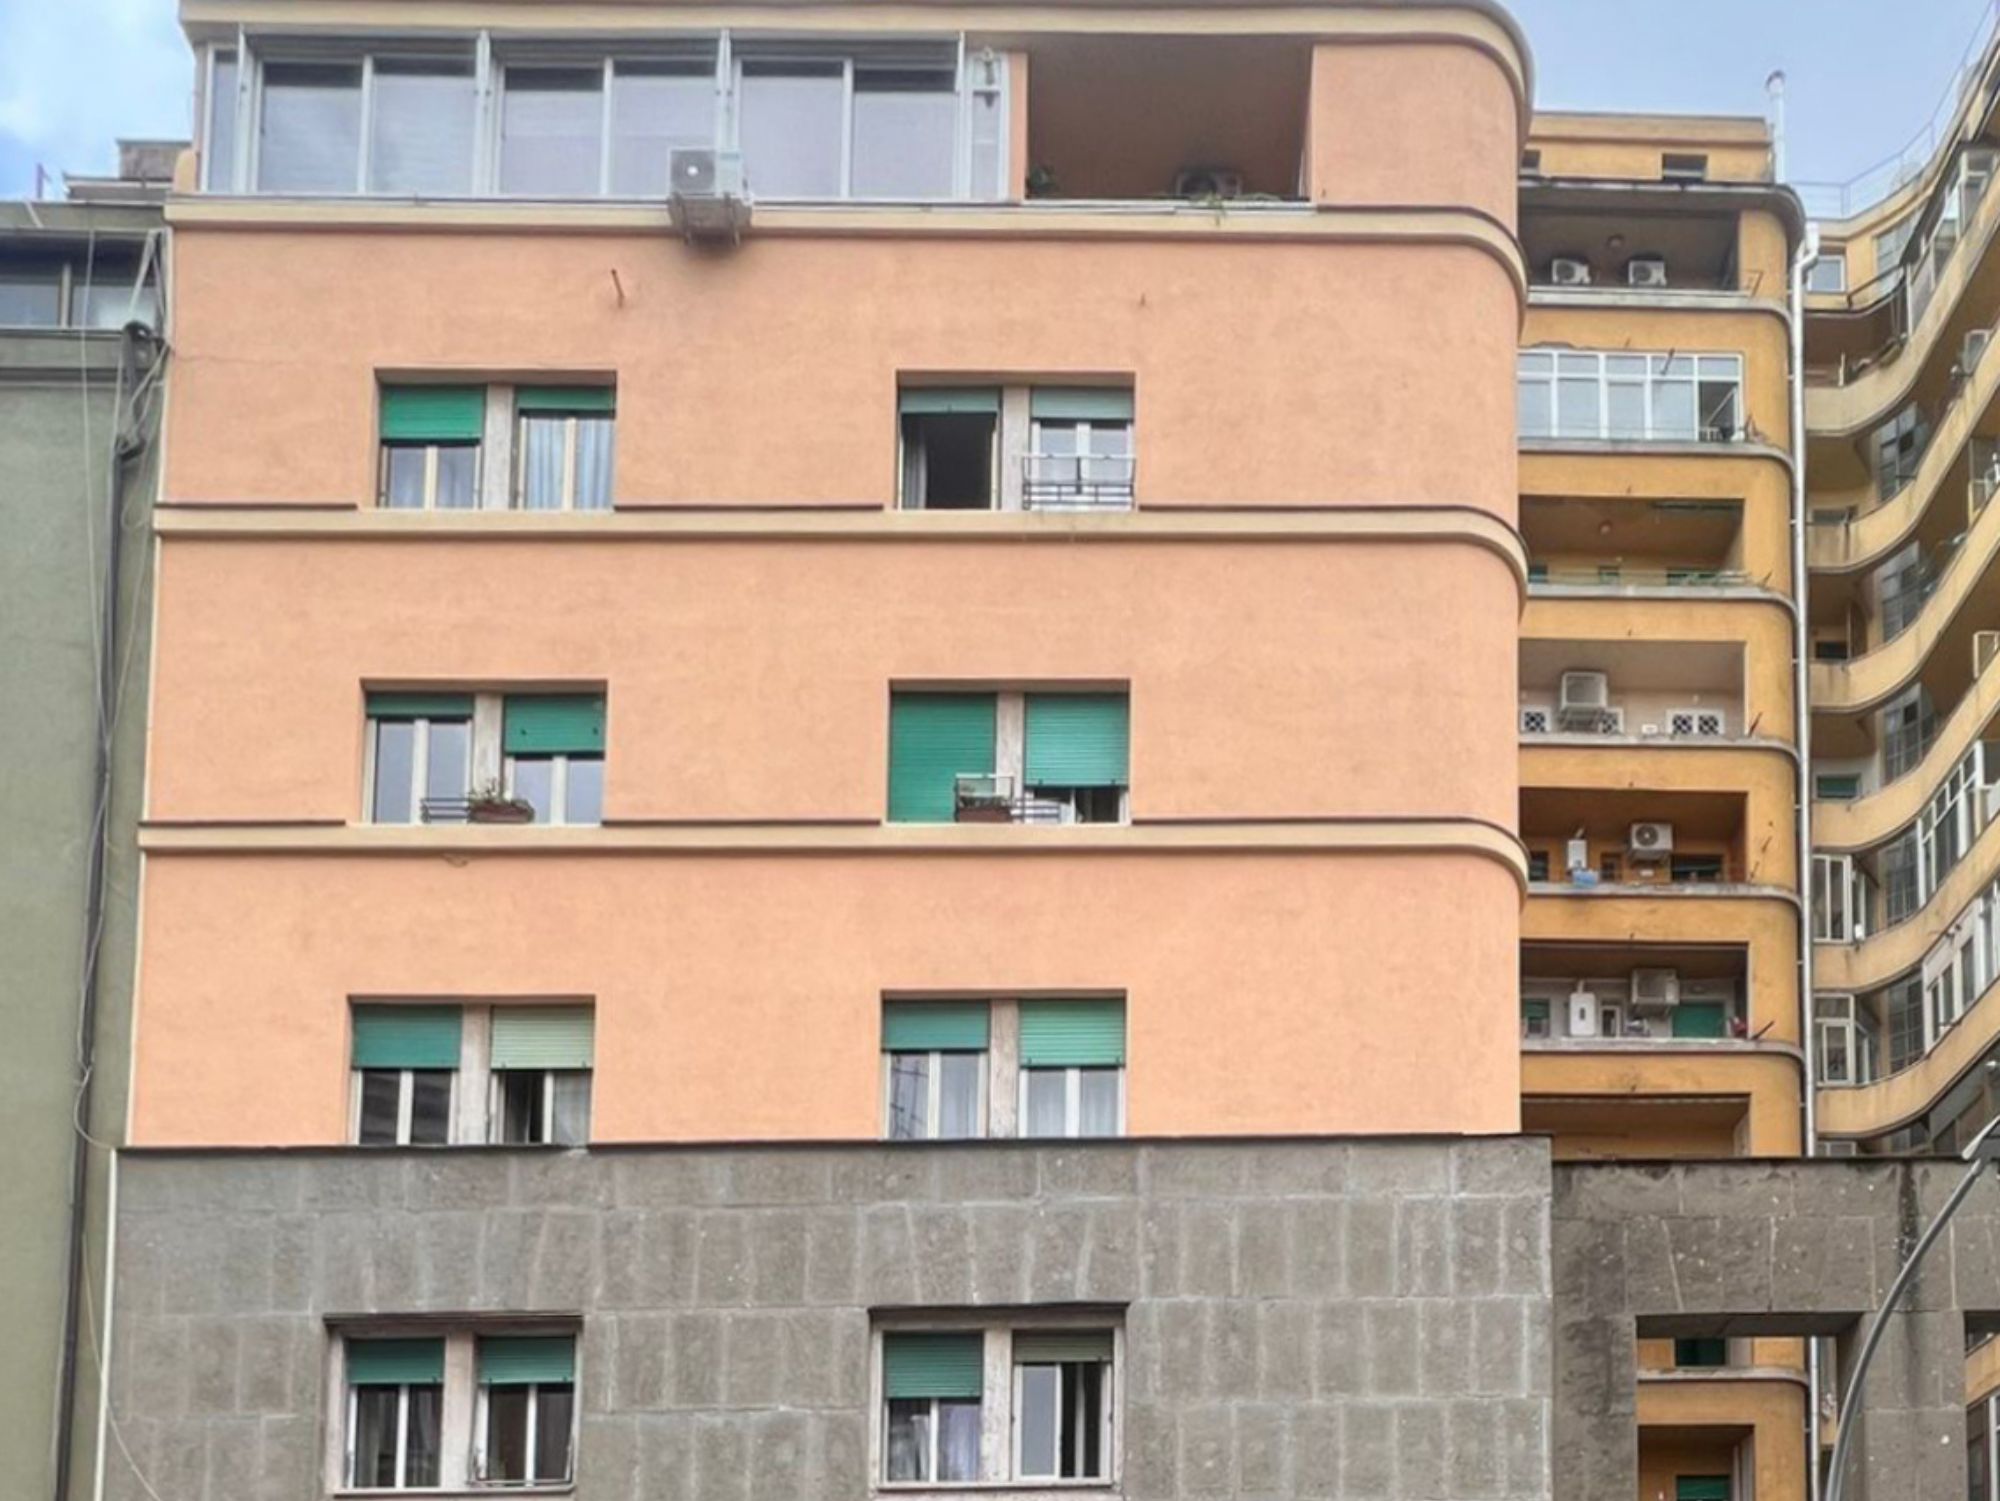 Condominio Via Orazio Coclite, Roma - Intervento di ristrutturazione della facciata - 2